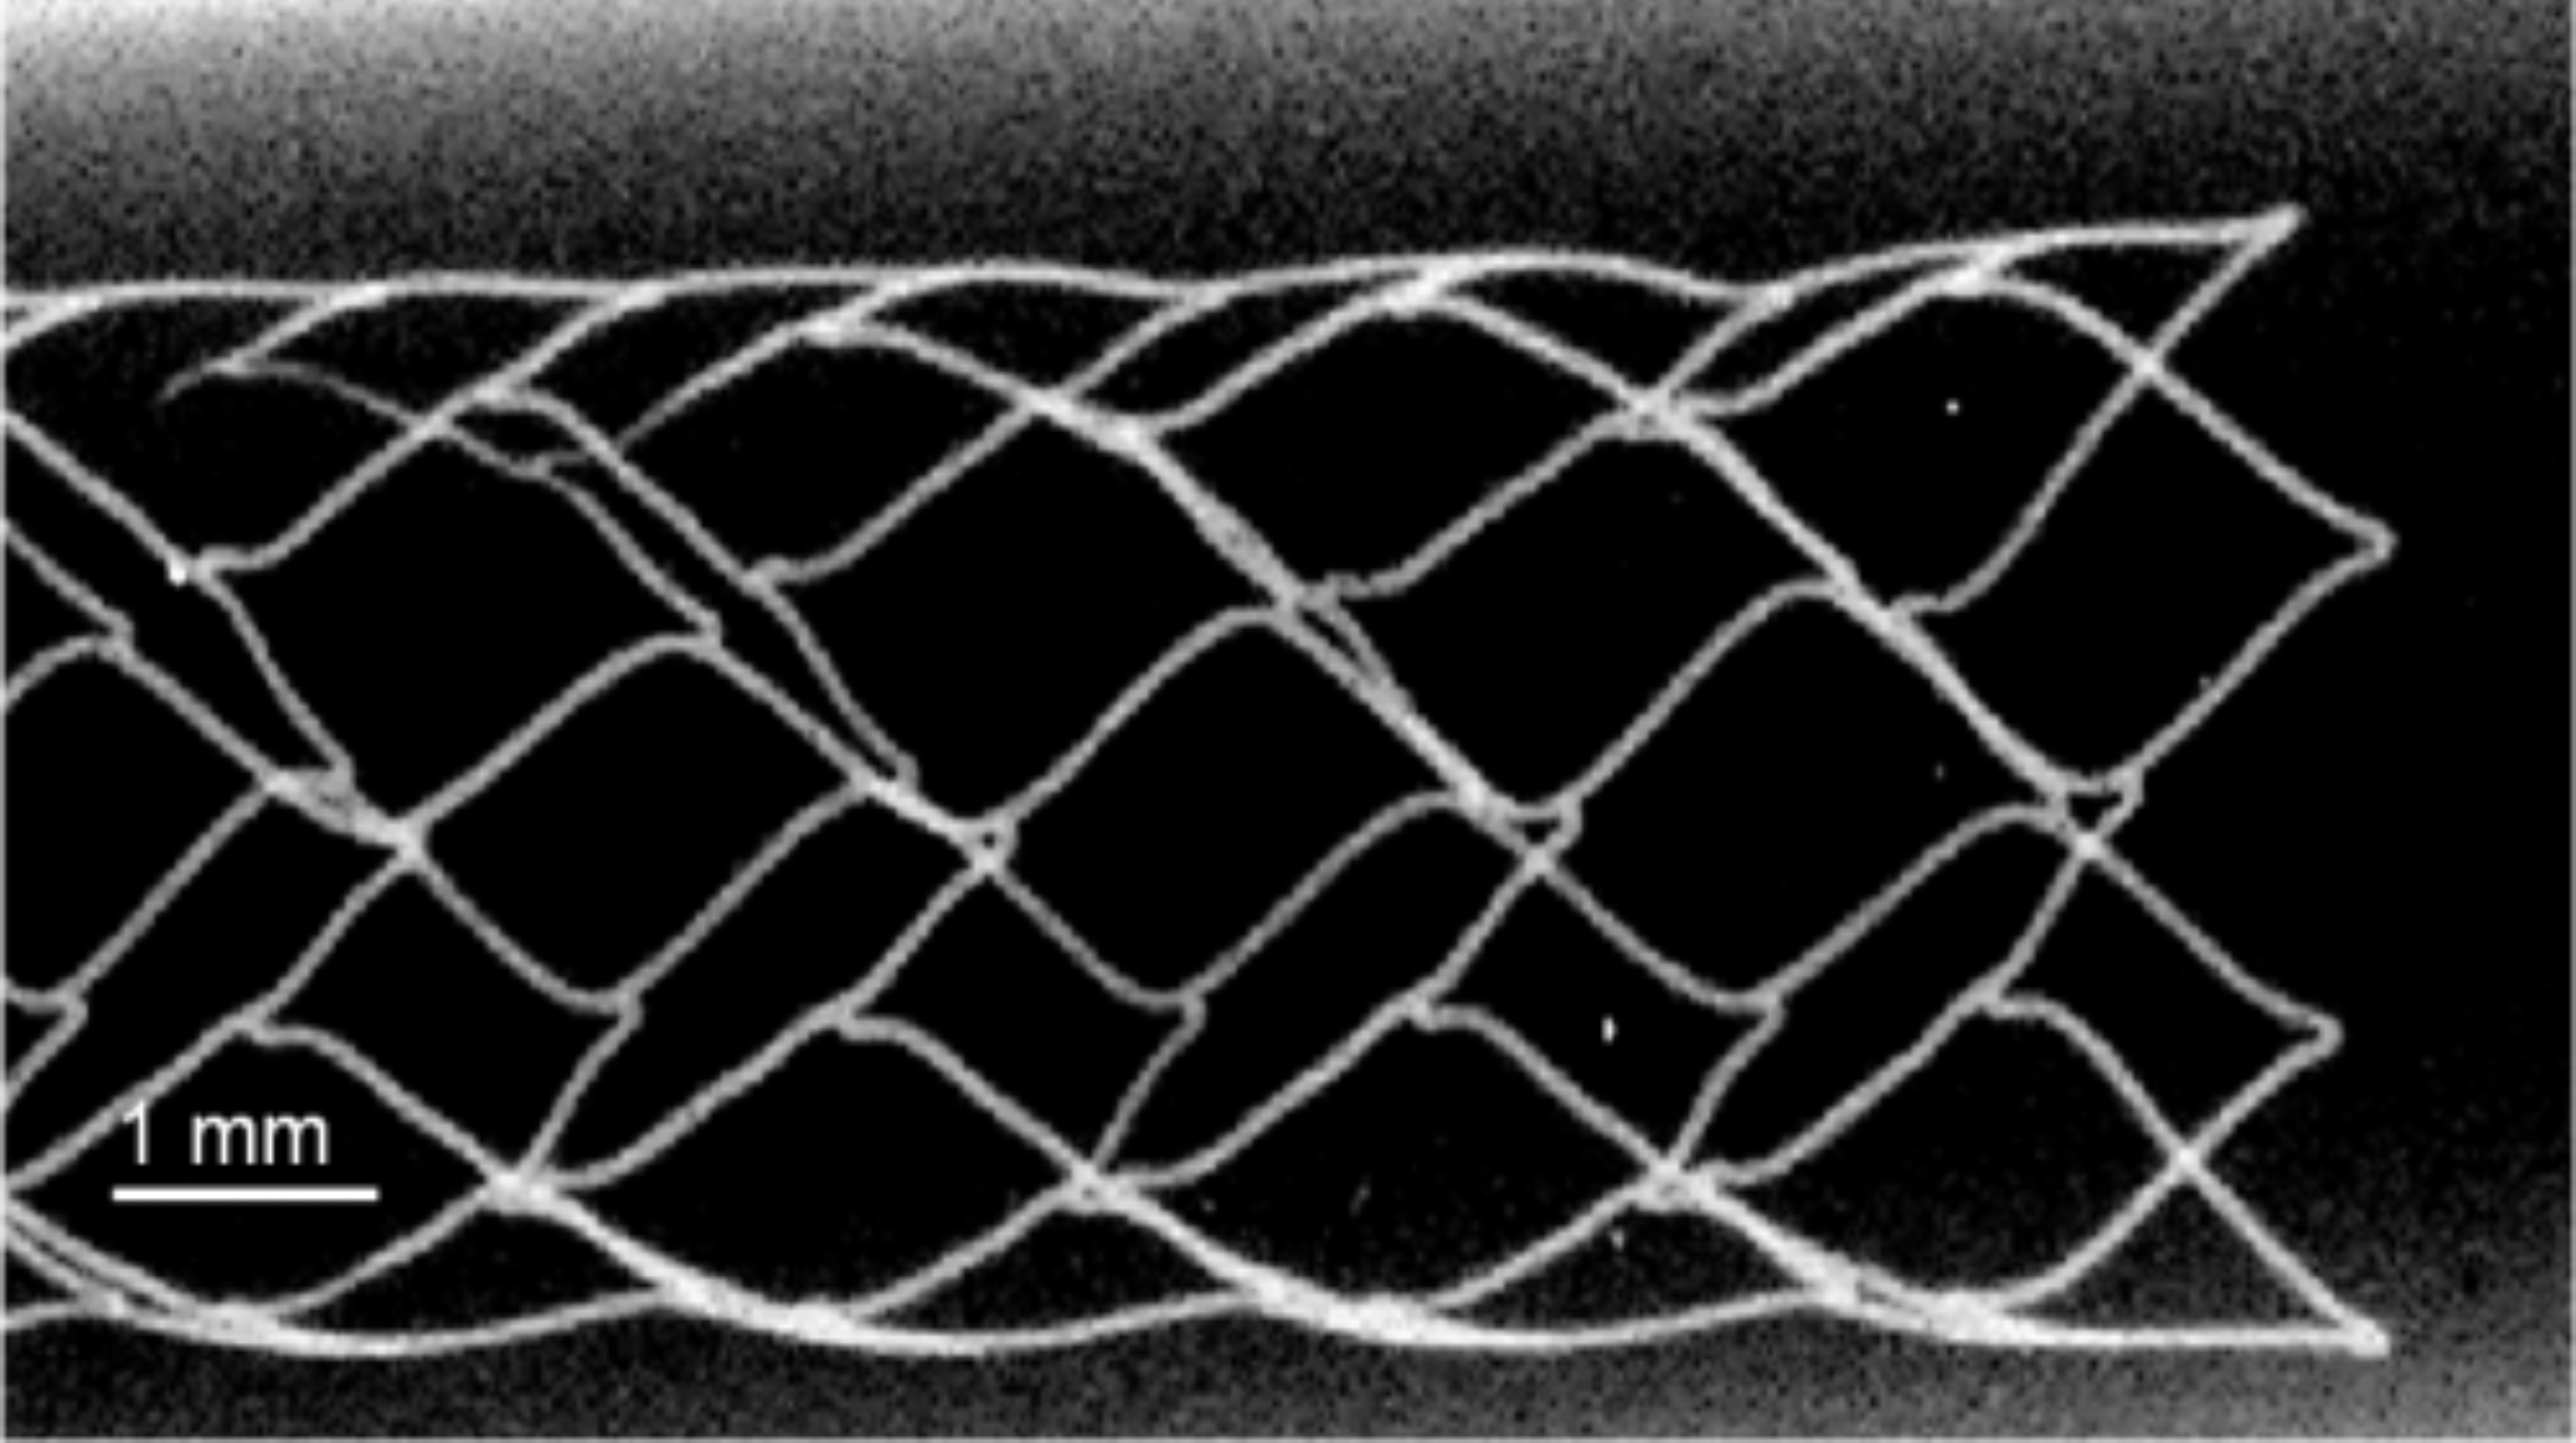 25-50 micron wire diameter aorta stent